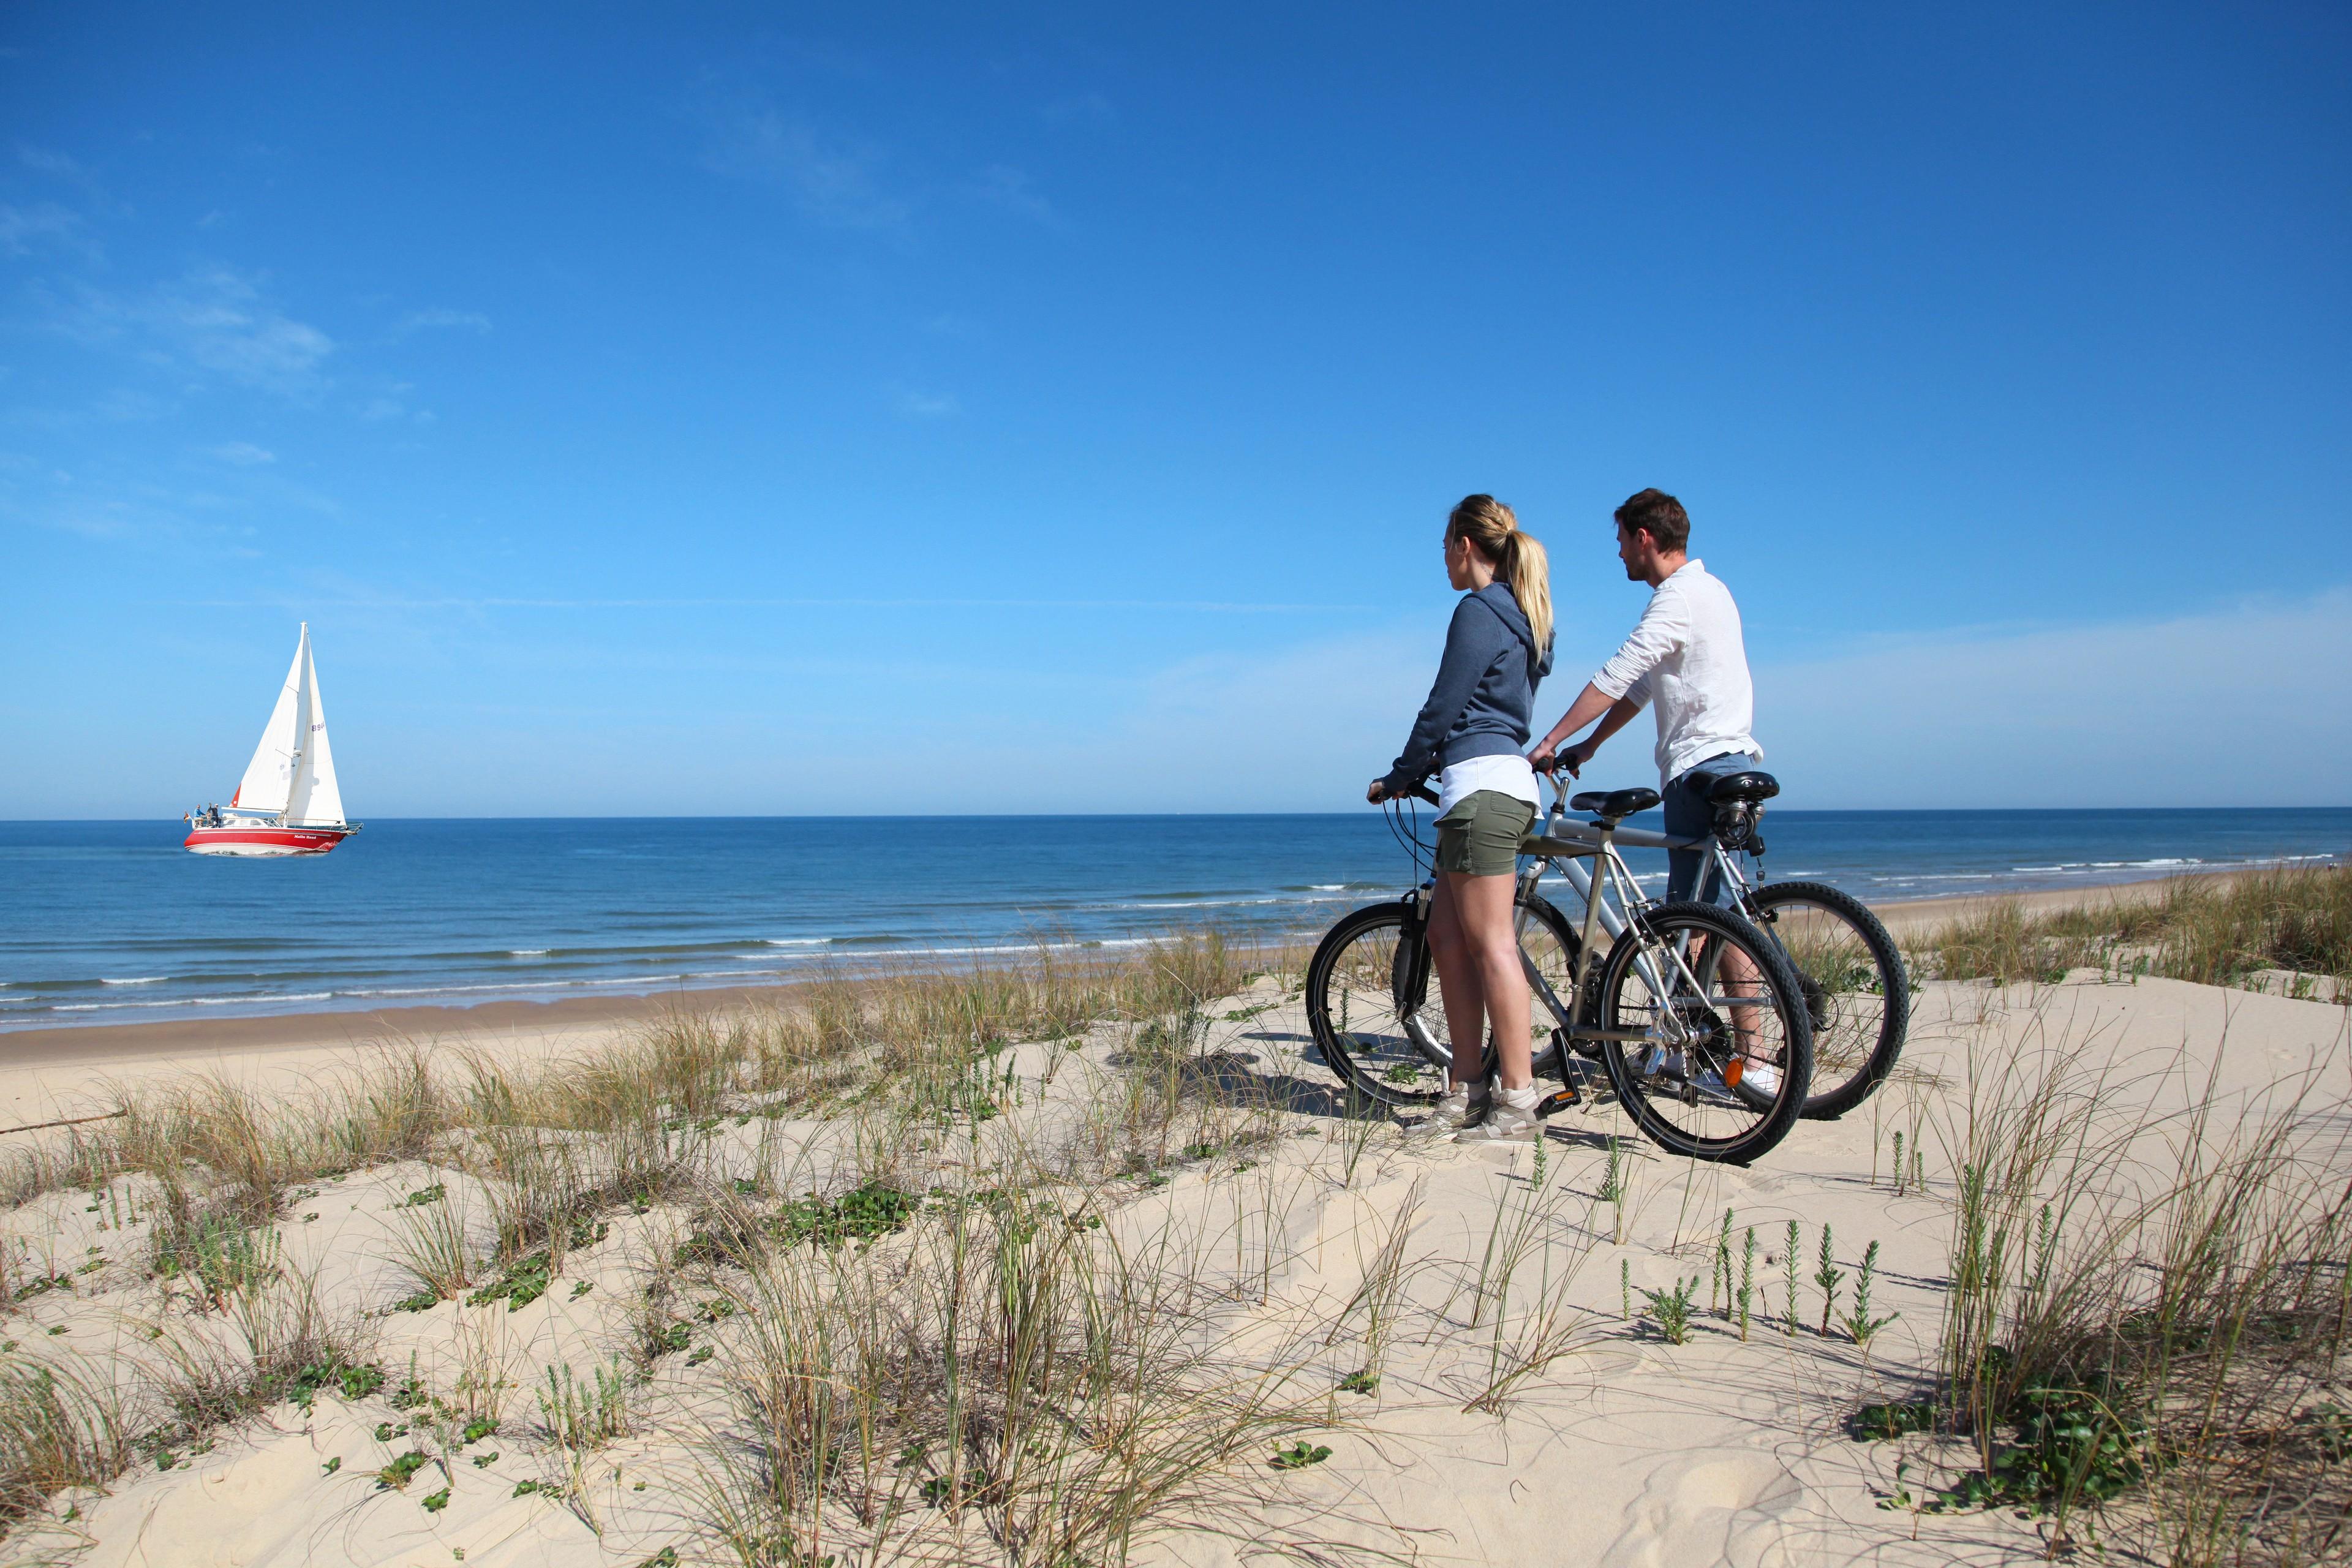 Zwei Personen stehen am Strand neben ihren Fahrrädern und betrachten ein Schiff